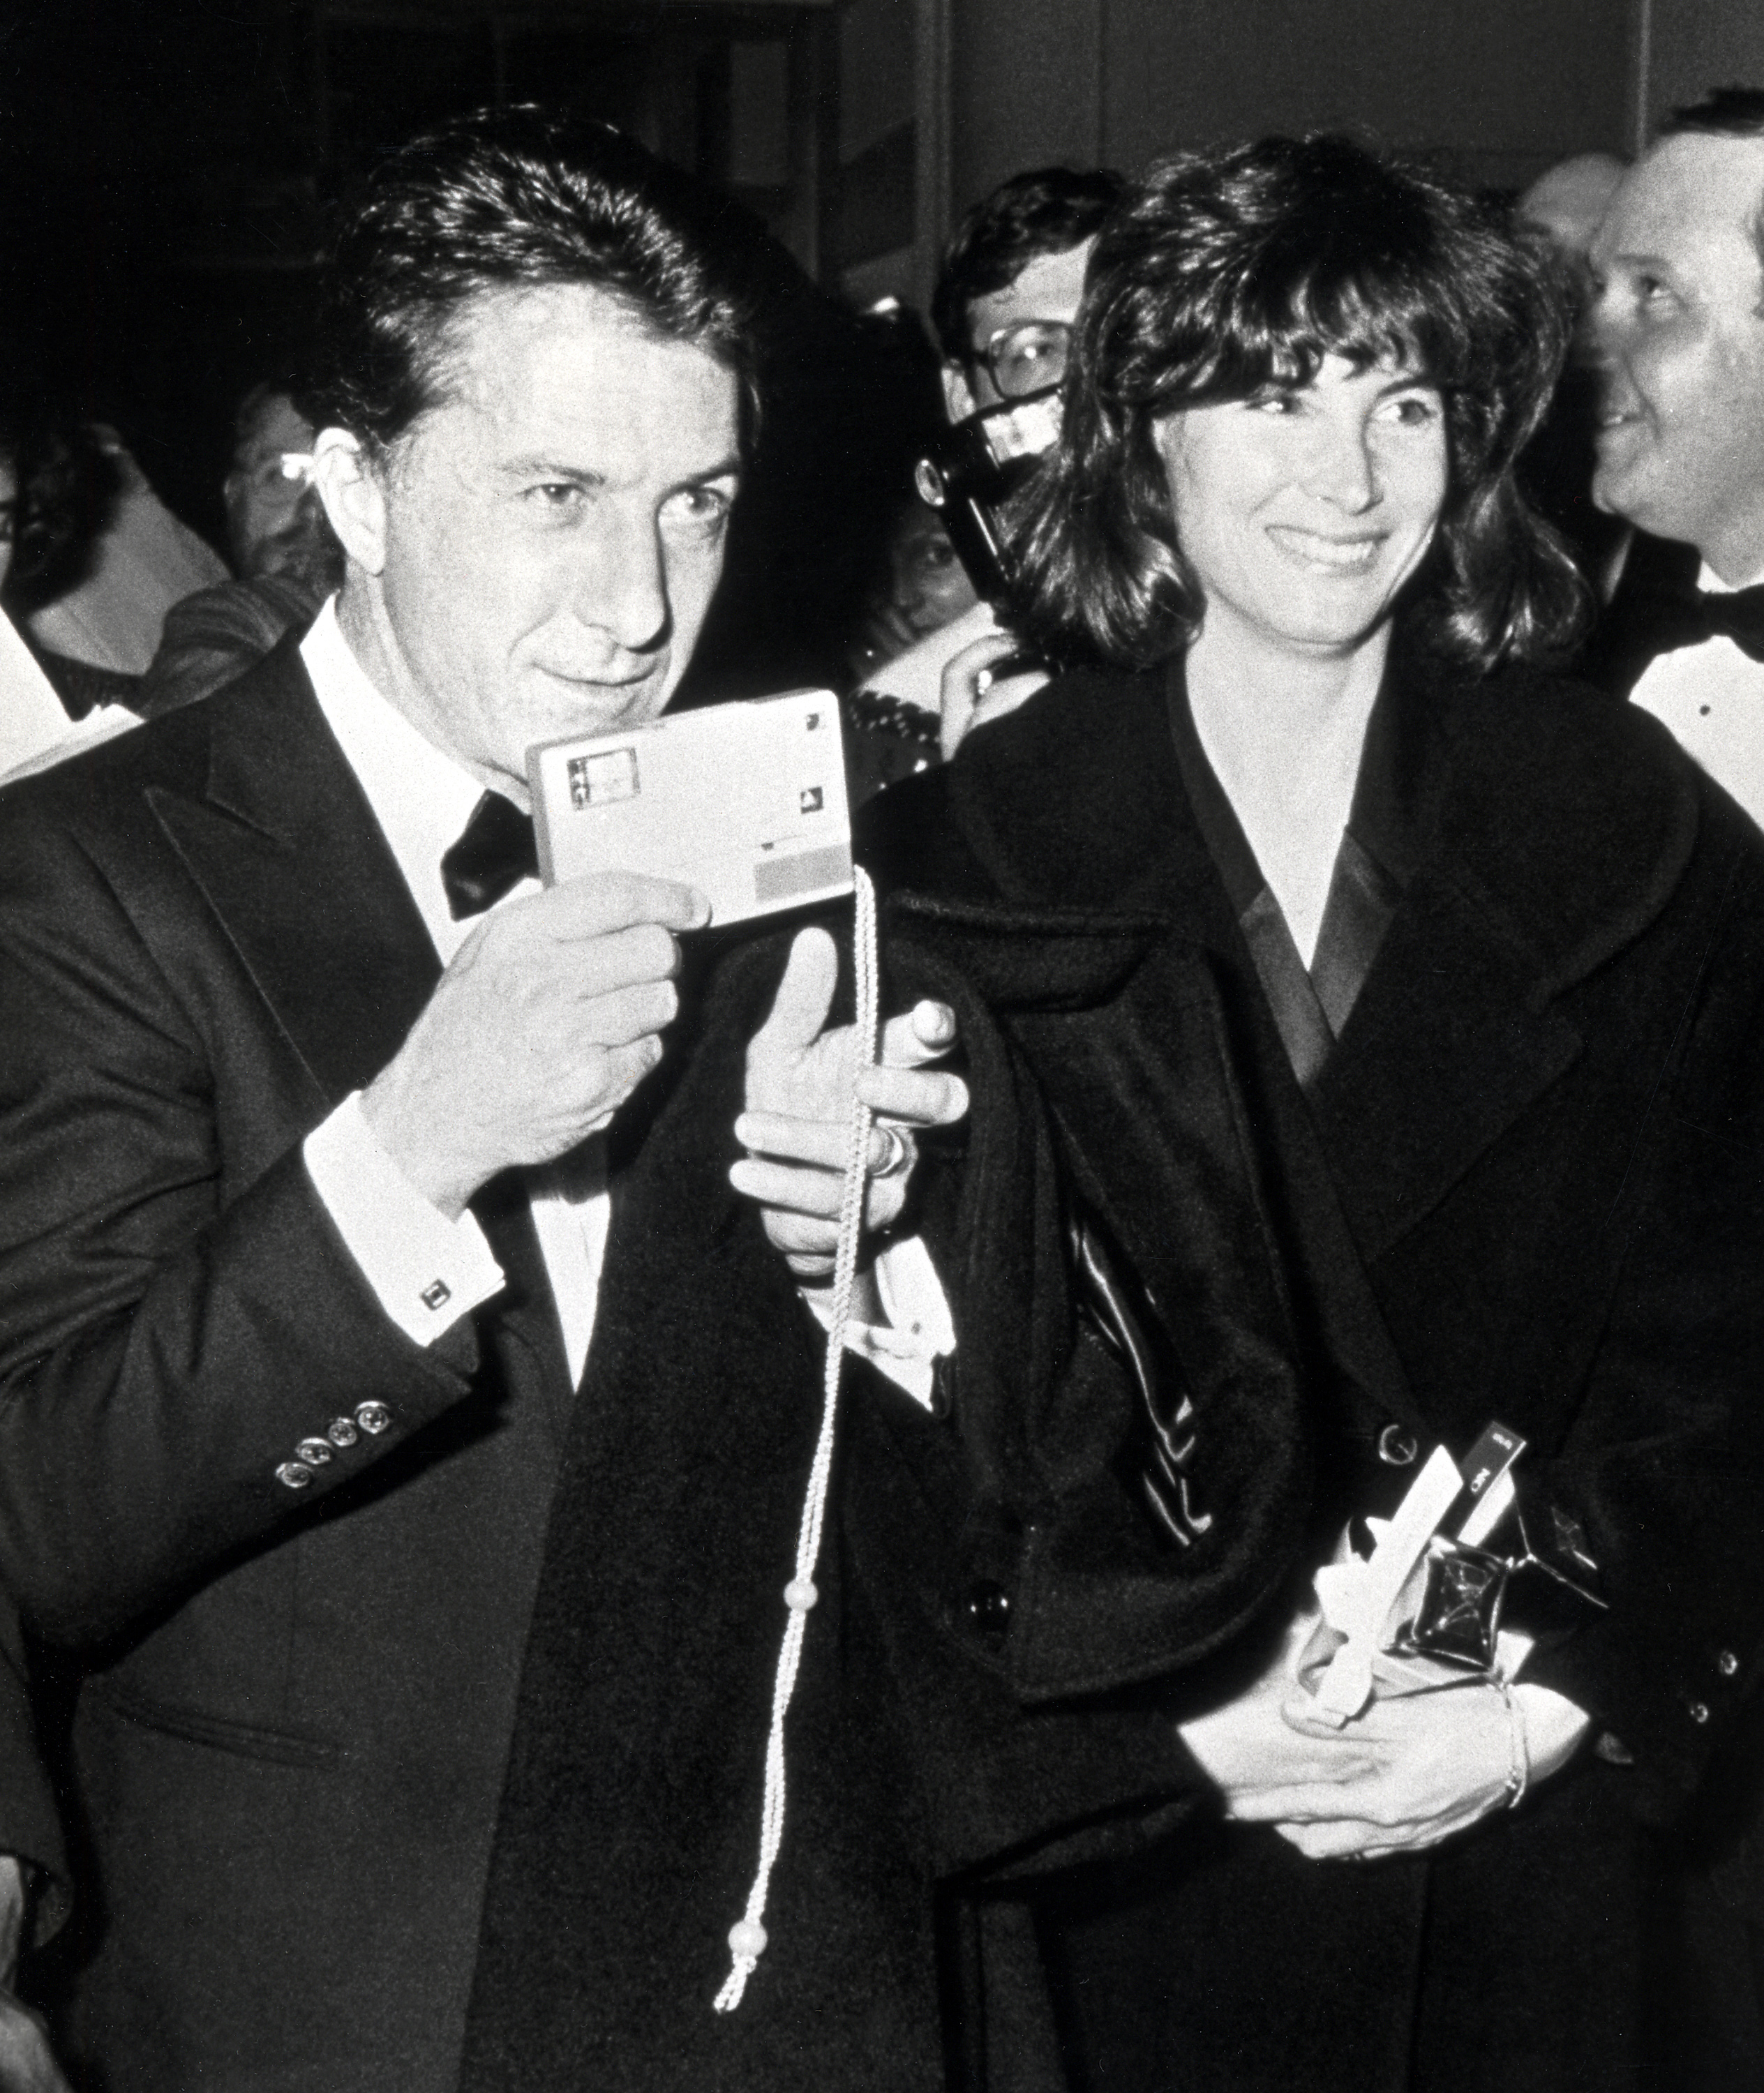 Der Schauspieler und die Frau beim America Museum of Moving Images Tribute to Elia Kazan in New York City am 19. Januar 1987. | Quelle: Getty Images